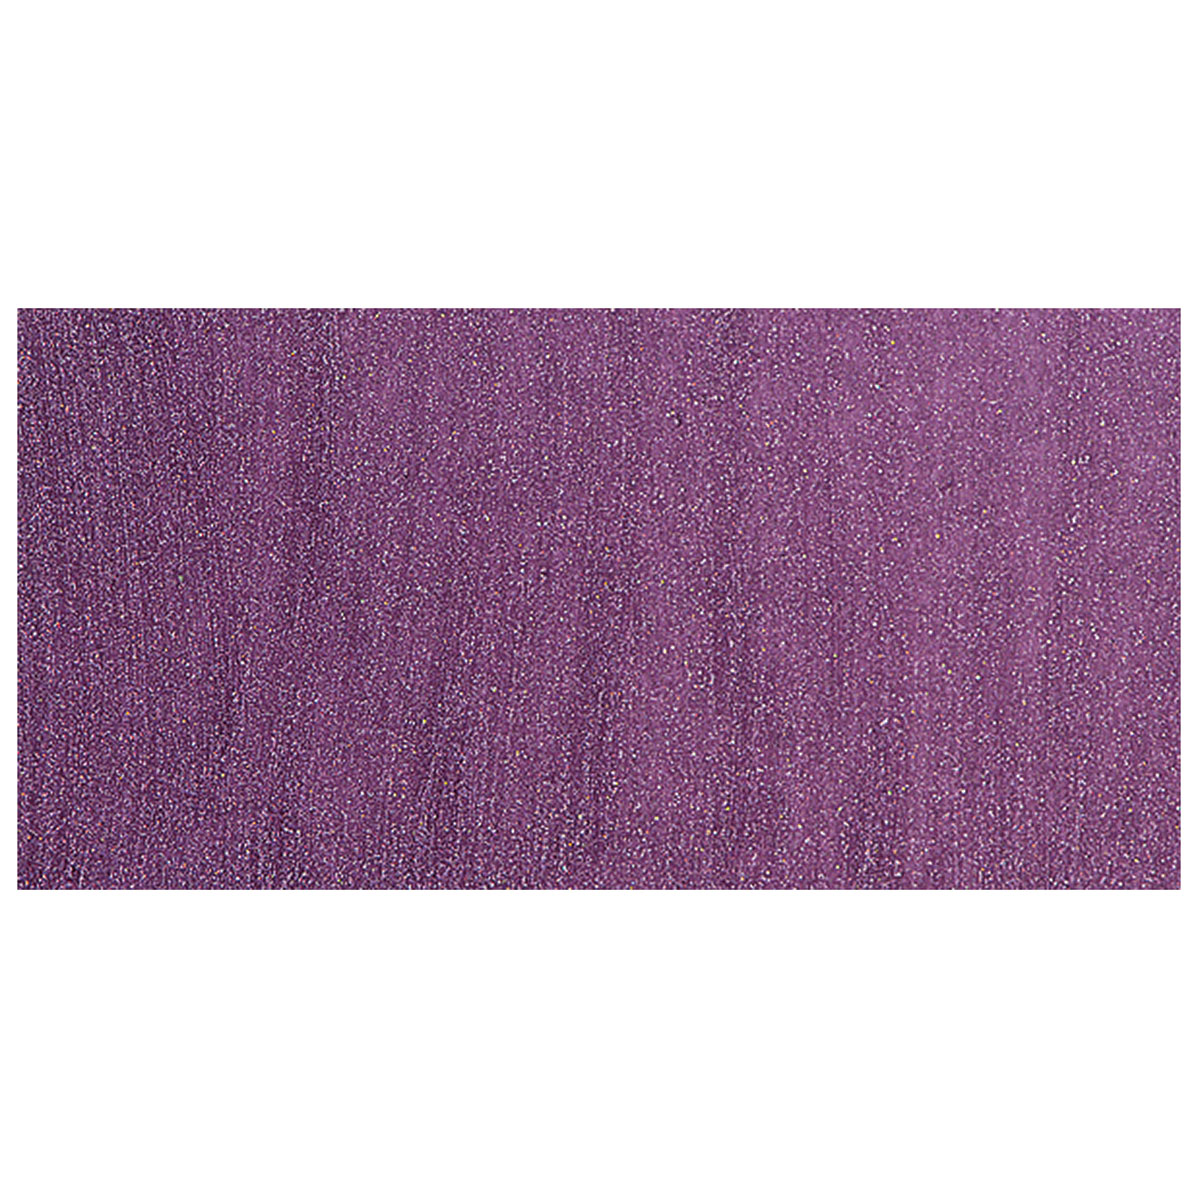 Testors Enamel Paint - Purple - Sam Flax Atlanta